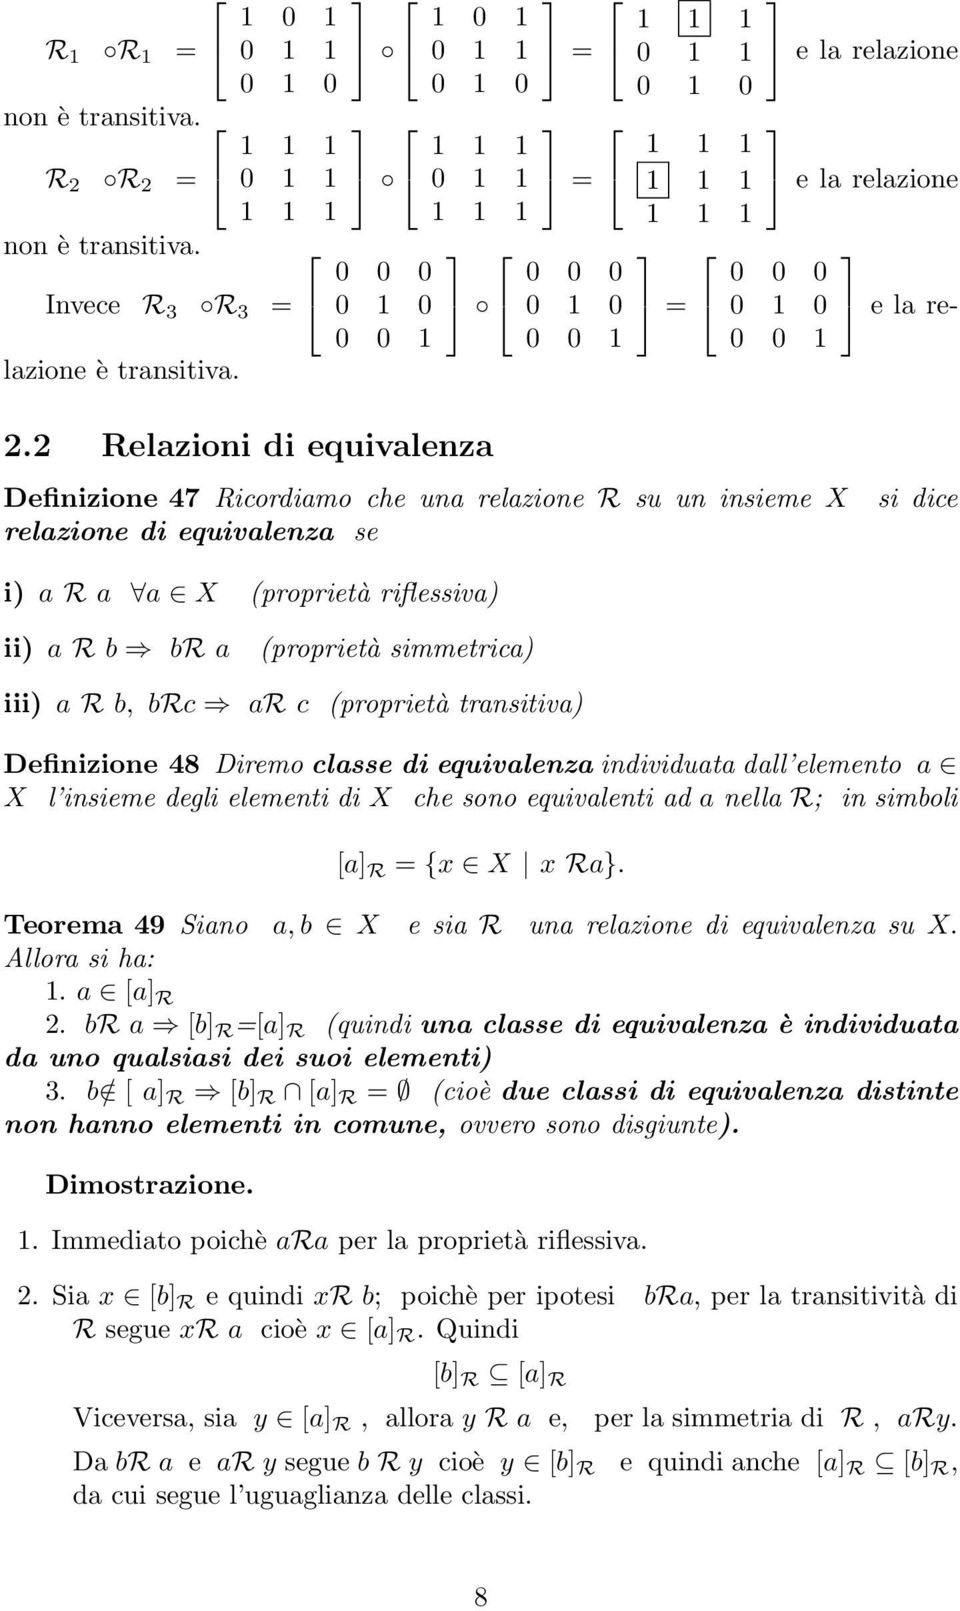 iii) a R b, brc ar c (proprietà transitiva) Definizione 48 Diremo classe di equivalenza individuata dall elemento a X l insieme degli elementi di X che sono equivalenti ad a nella R; in simboli [a] R